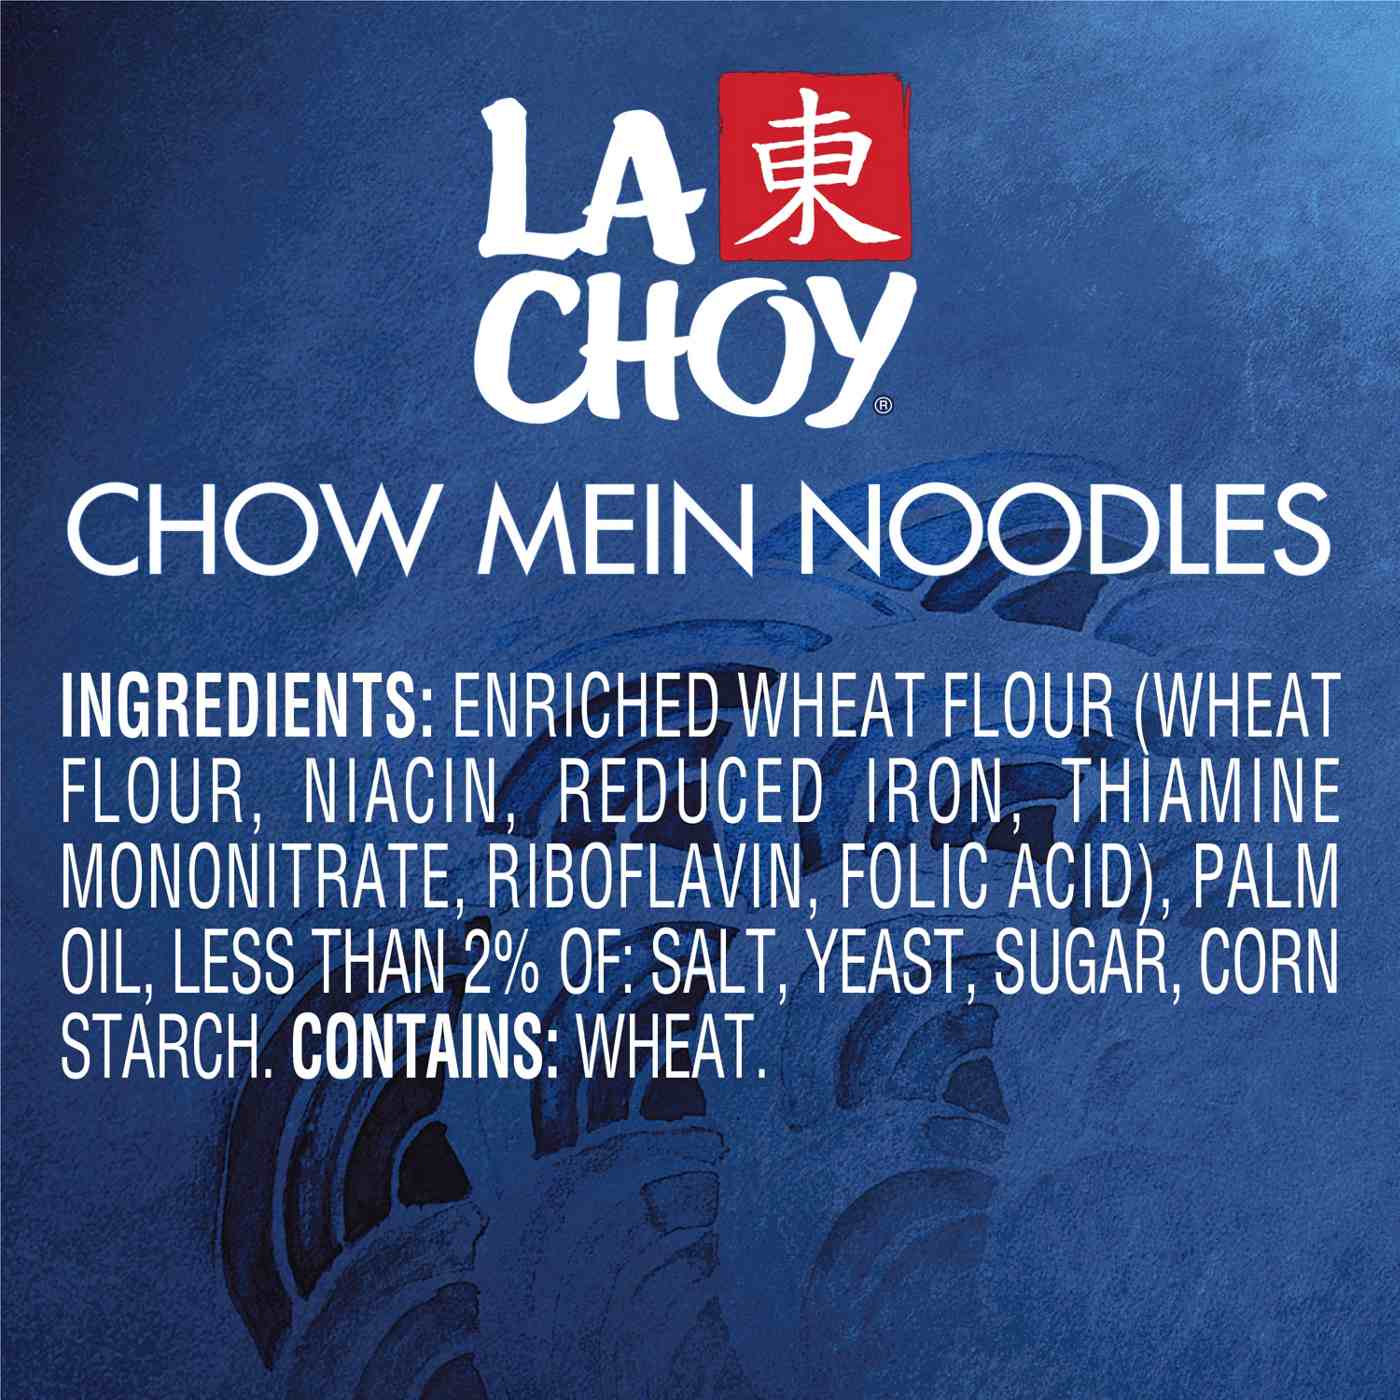 La Choy Chow Mein Noodles; image 5 of 5